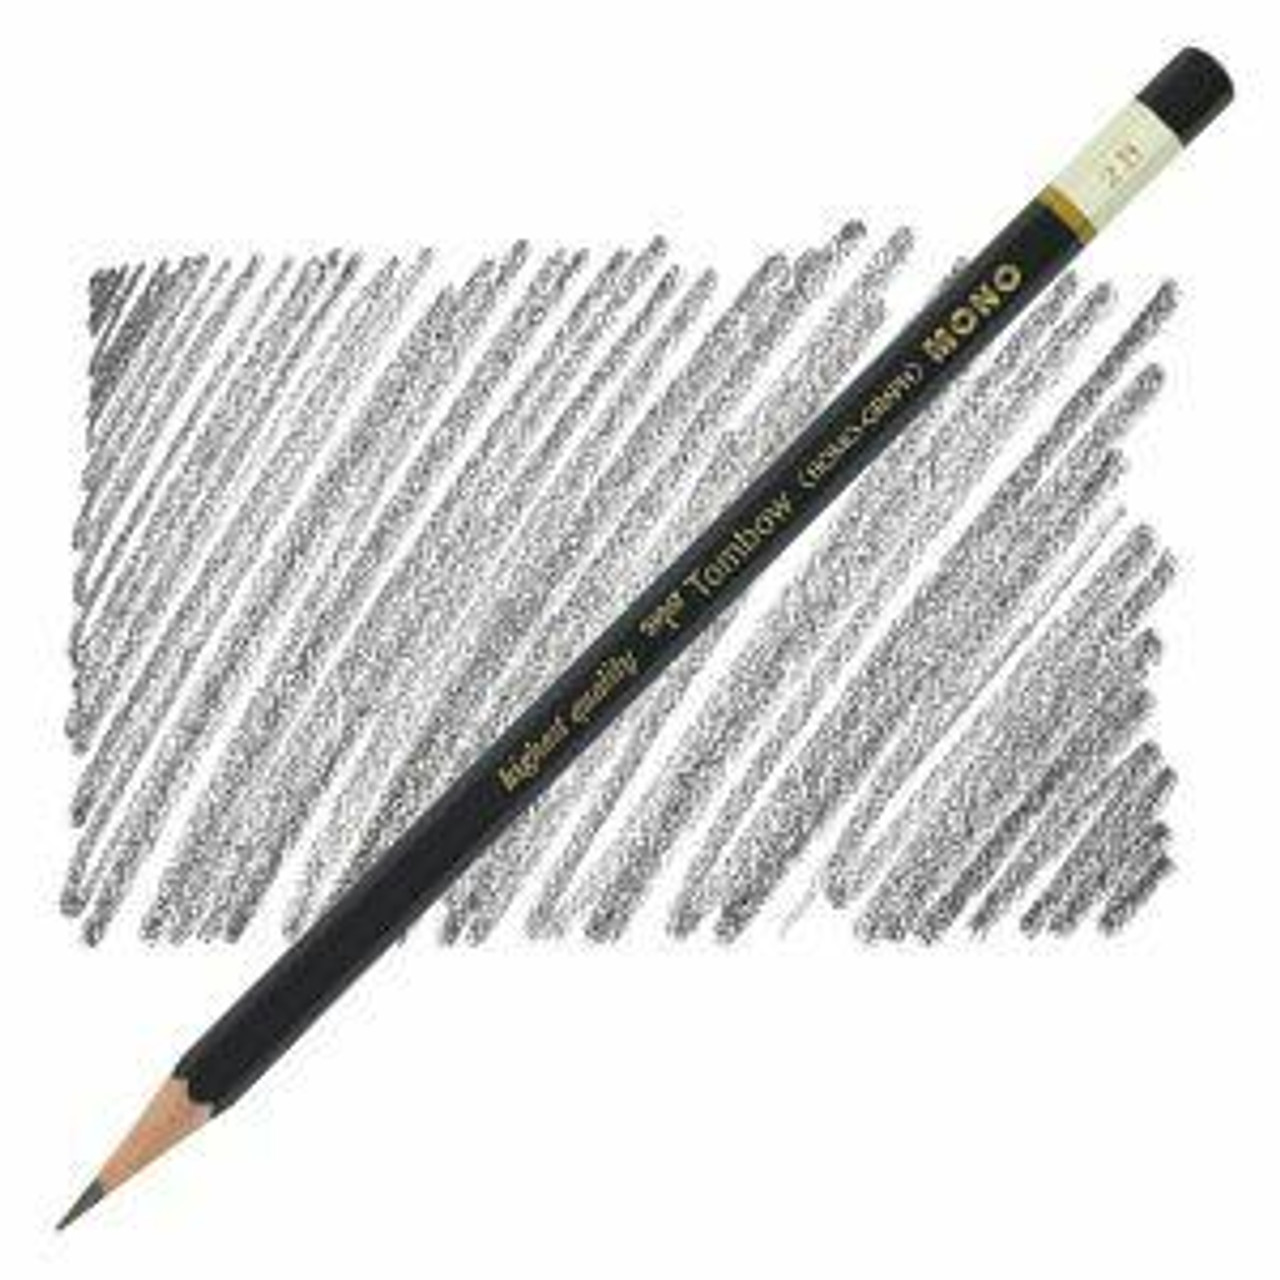 Quality 2B Graphite Pencil